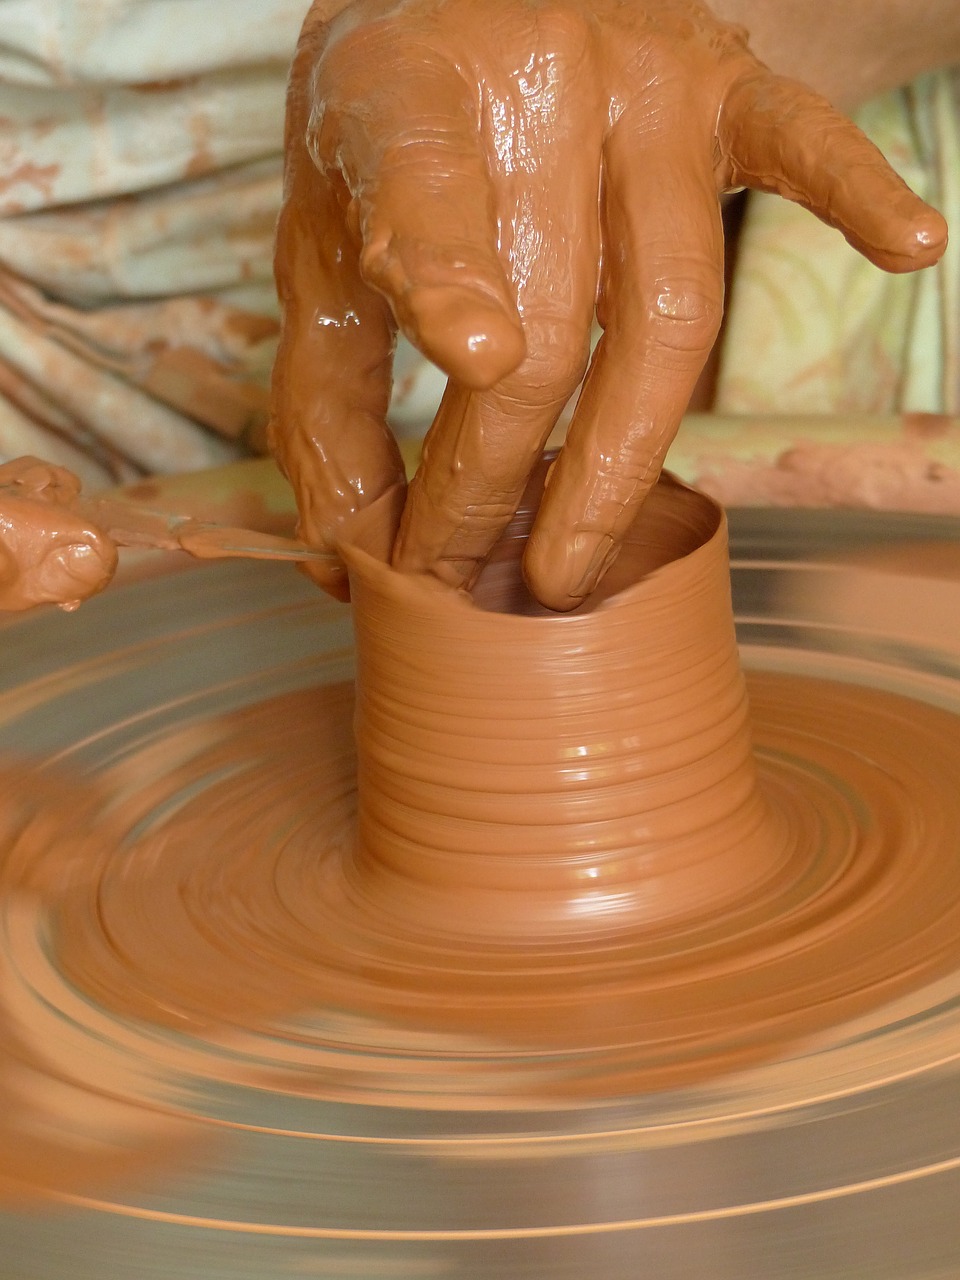 clay  pottery  art free photo